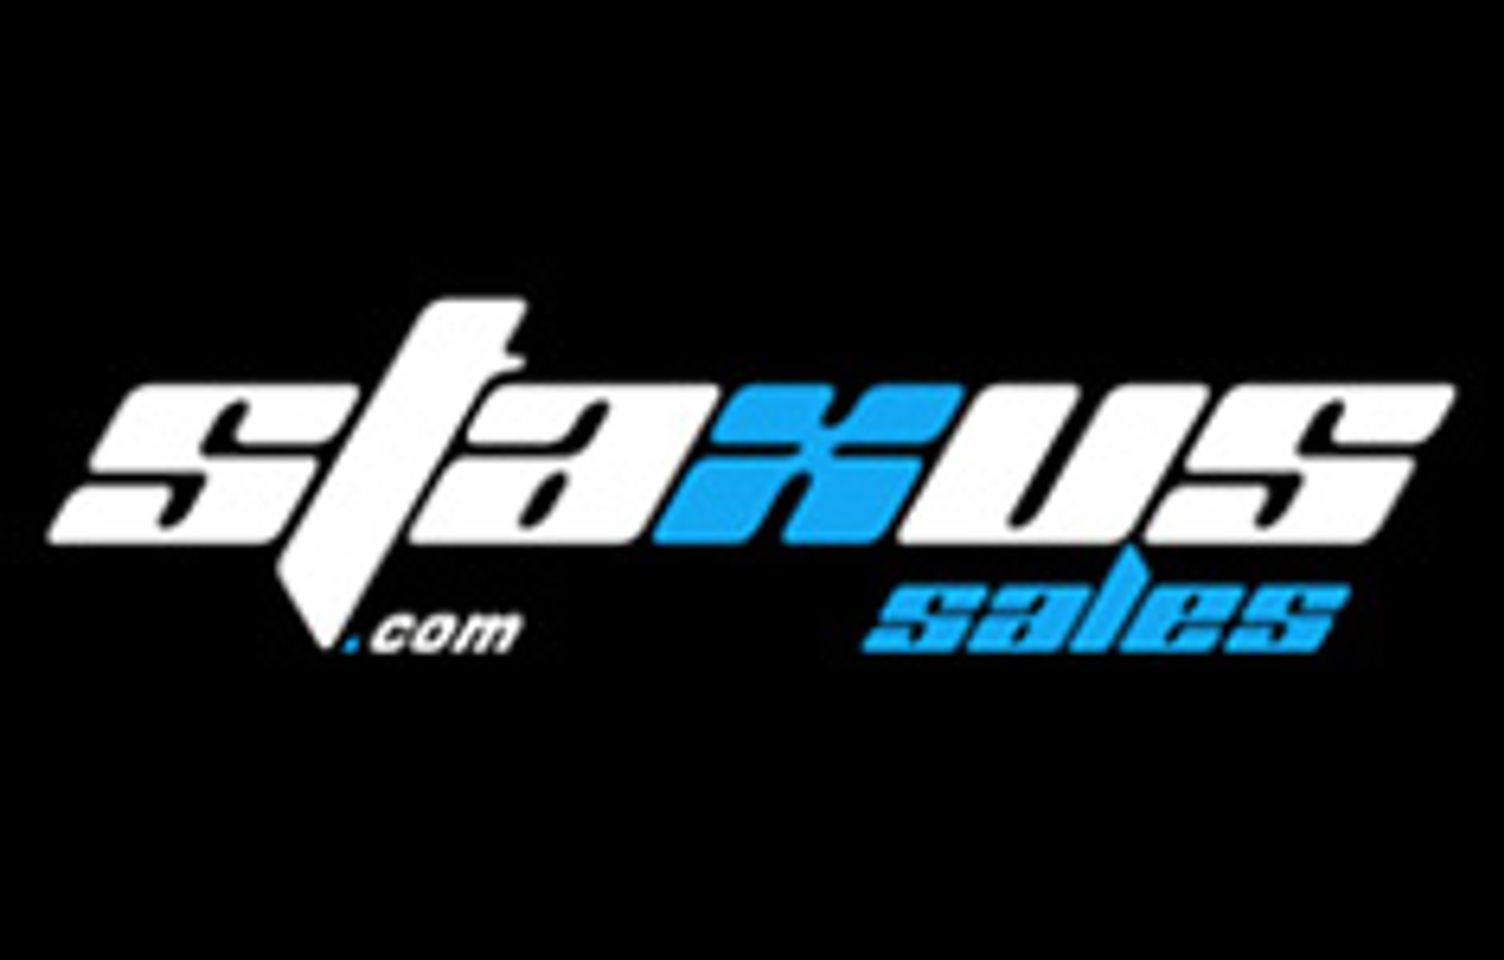 Staxus Sales Picks up Dark Alley in Europe